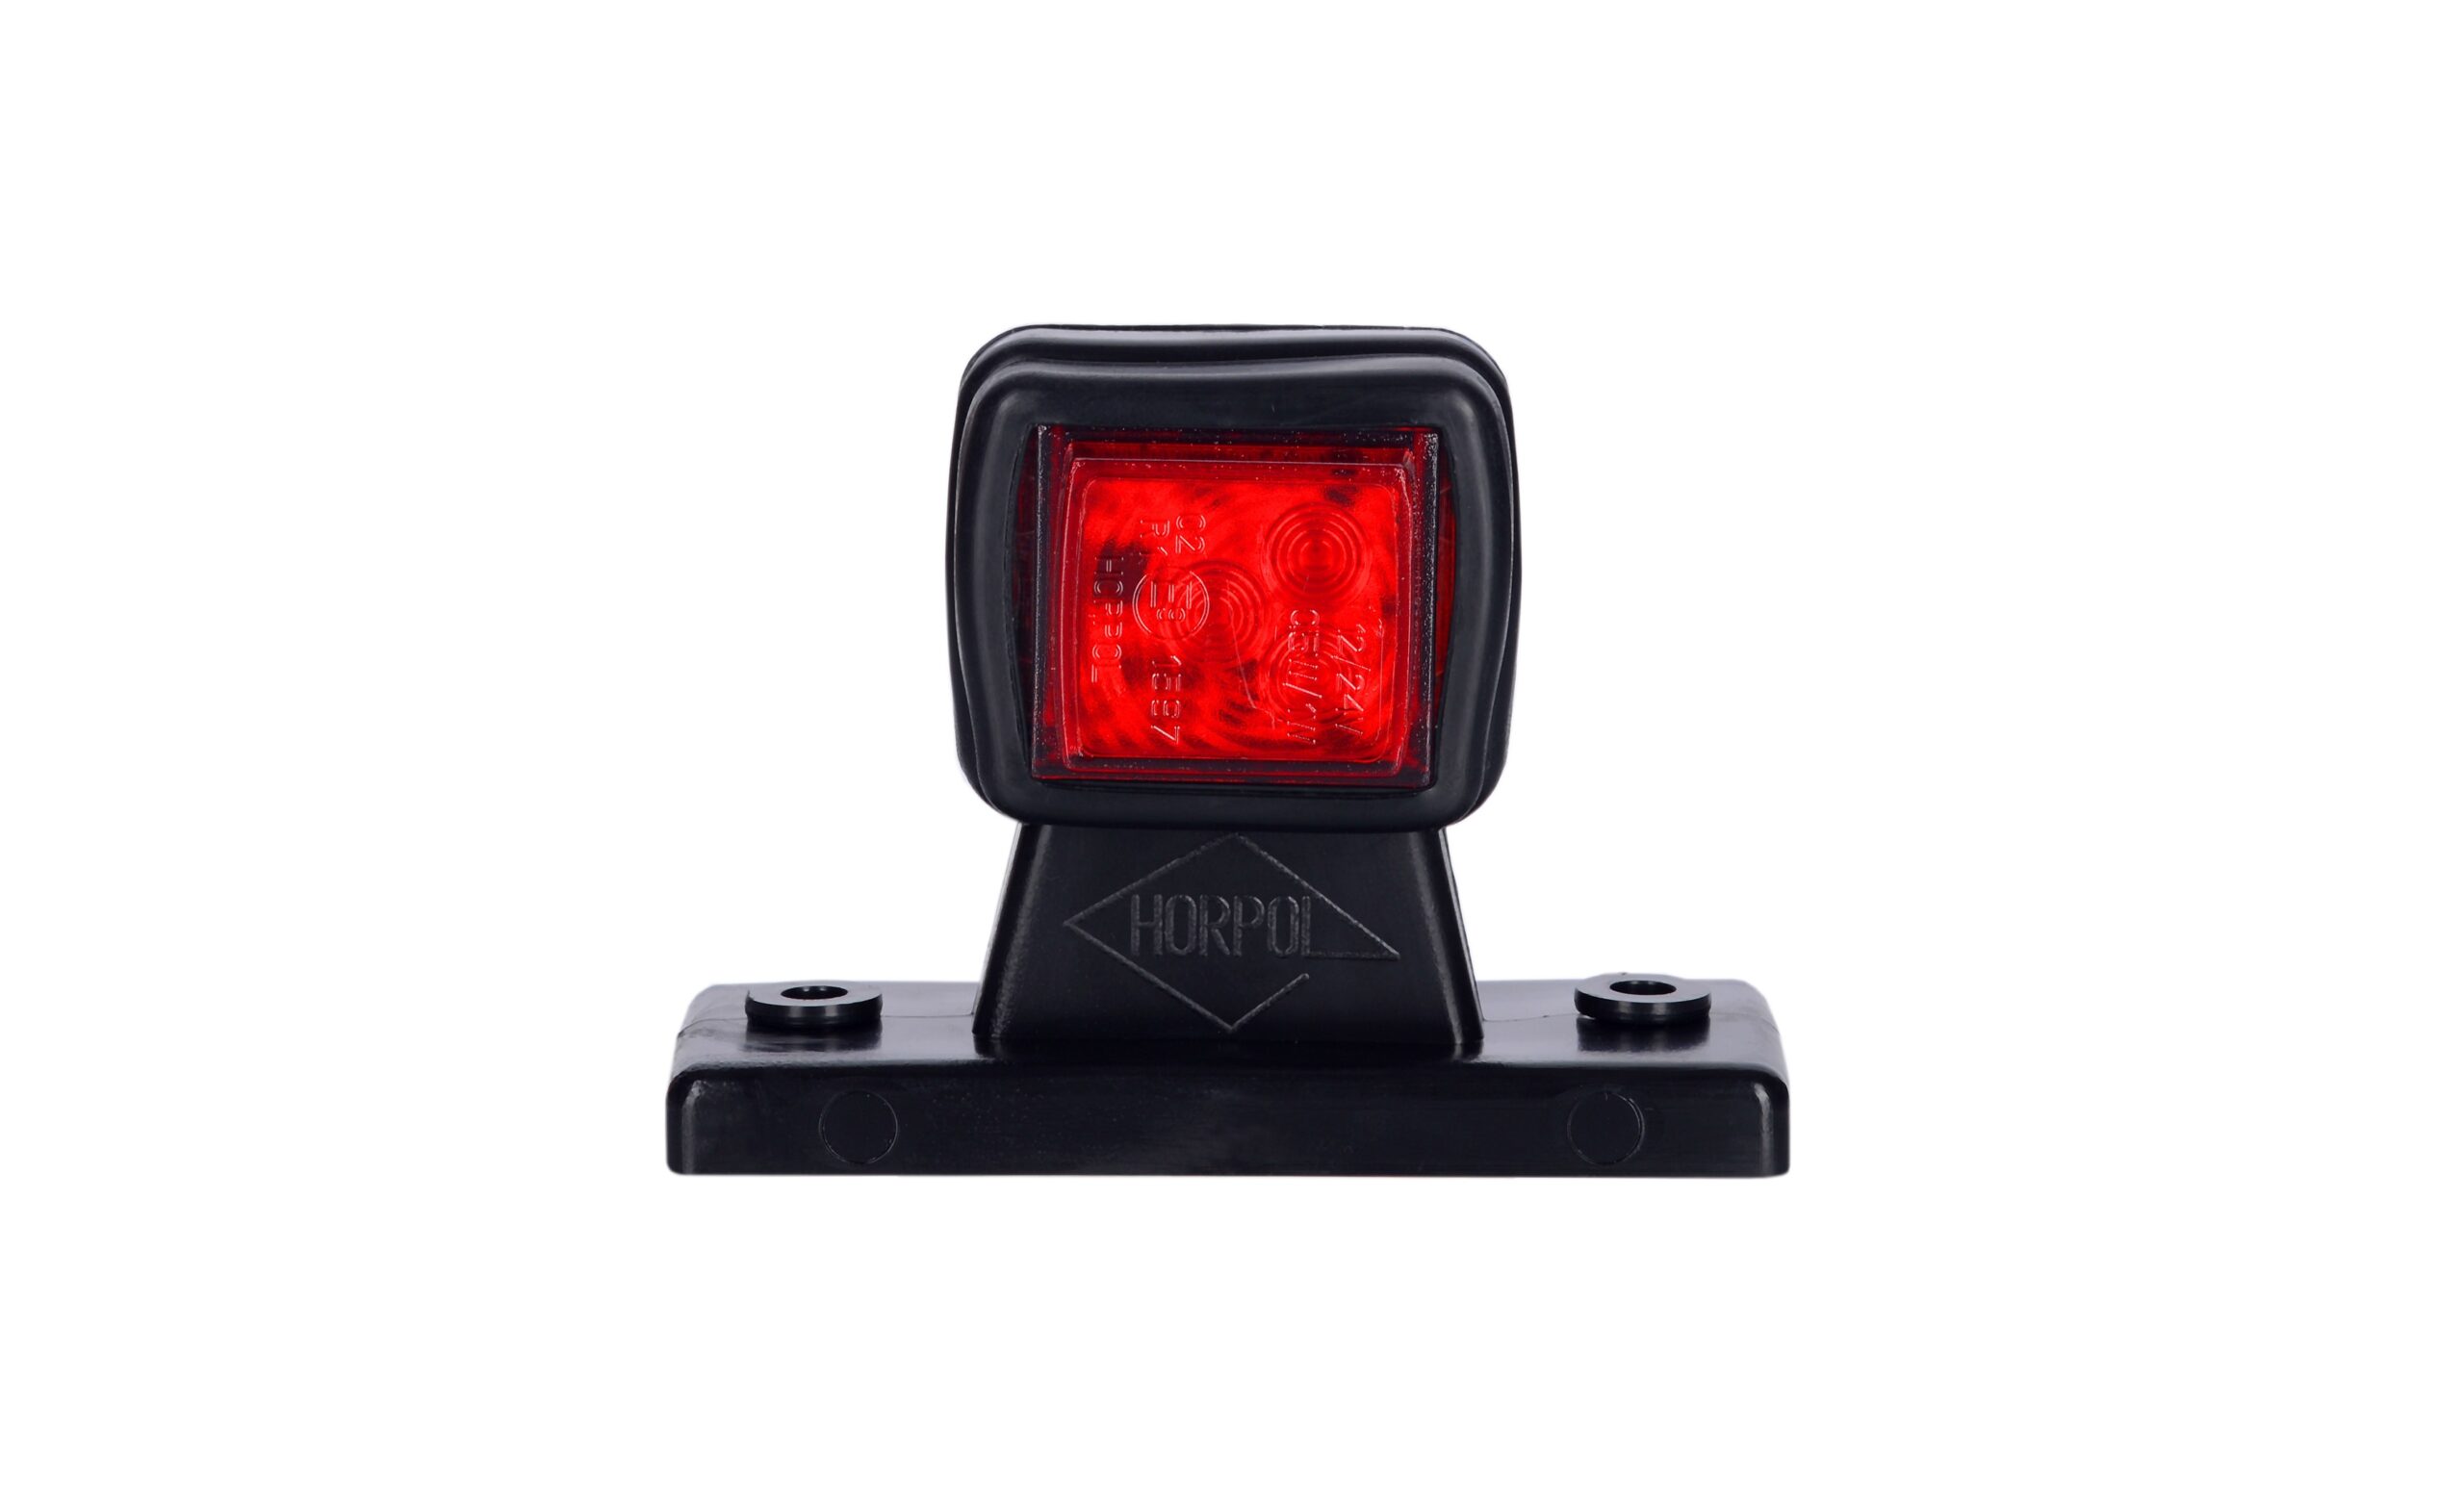 Lămpi de poziție și marcaj - Lampă gabarit, Horpol, pătrată, LED alb-roșu, cu suport, 12/24V, dreapta, fomcoshop.ro